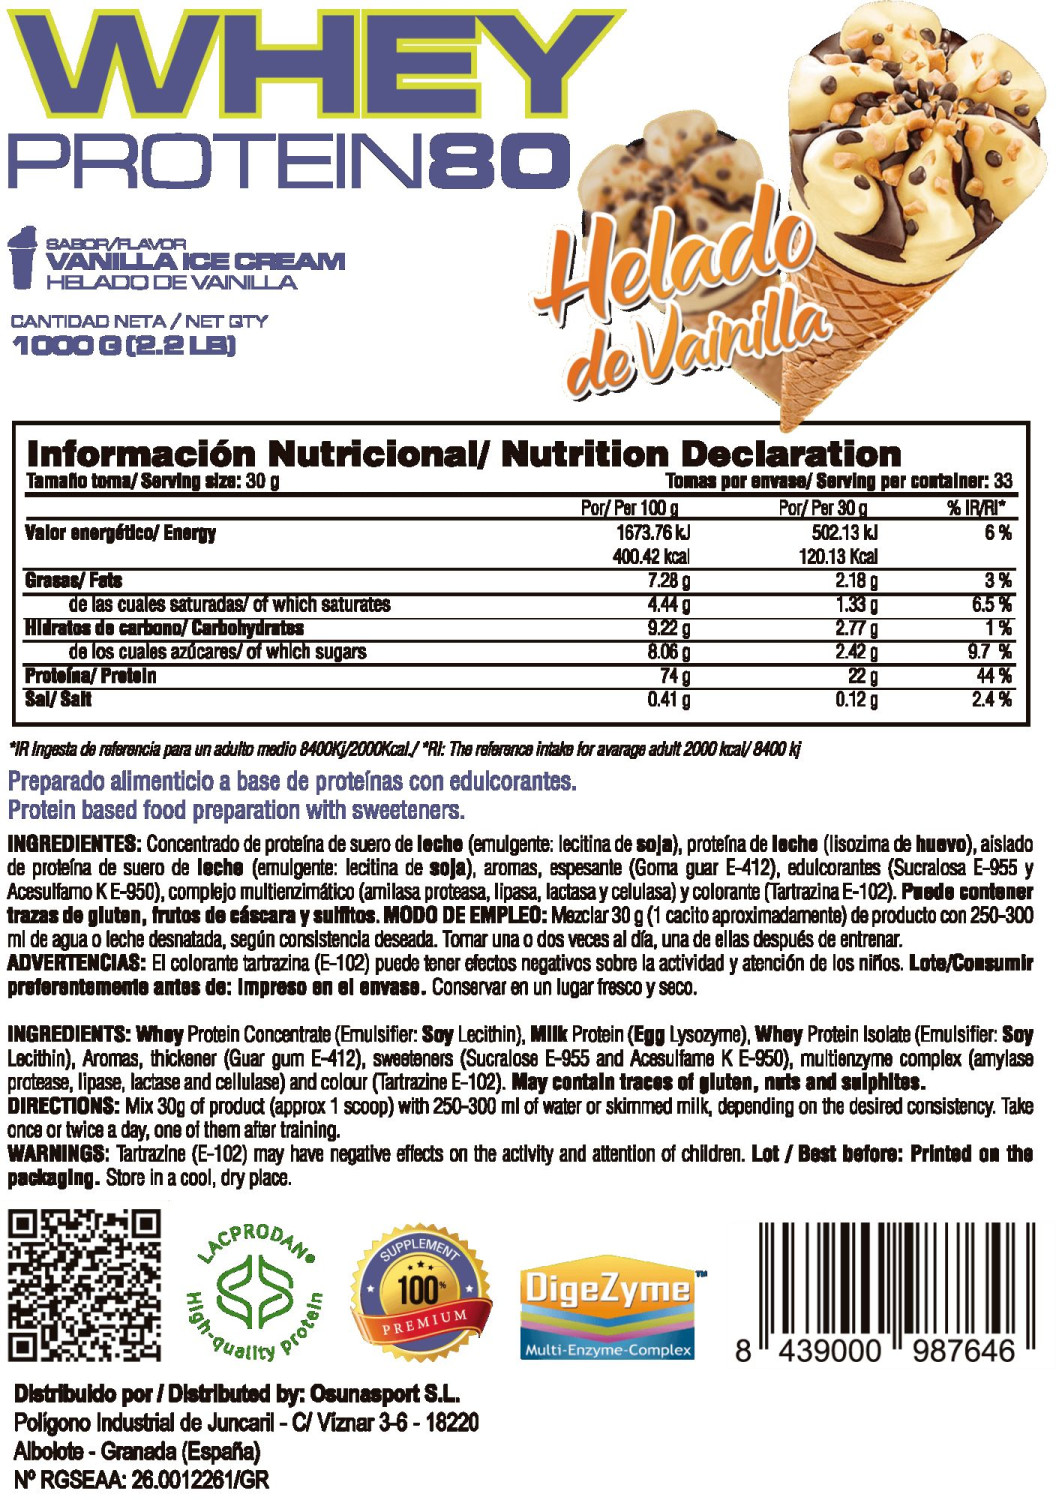 Whey Protein80 - 1kg De Mm Supplements Sabor Helado De Vainilla